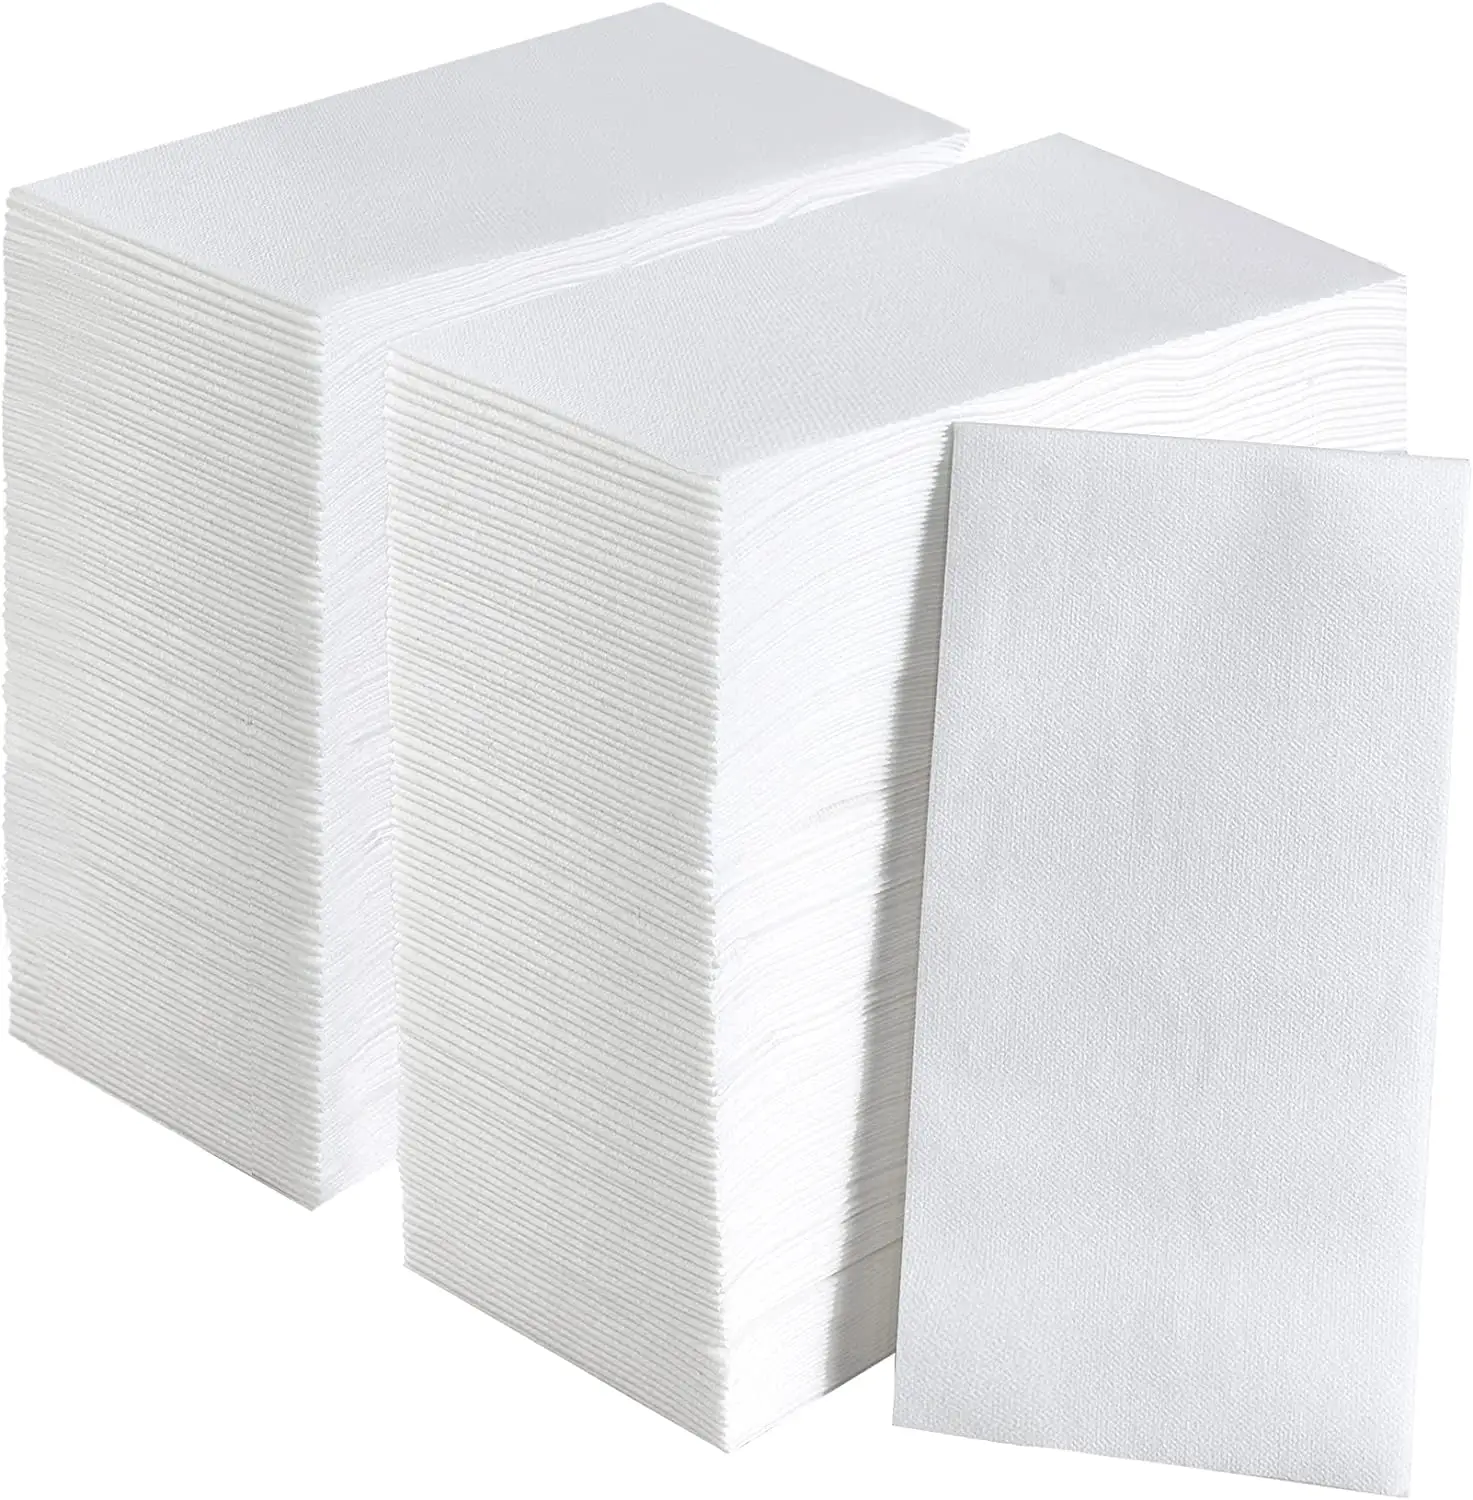 Serviettes en papier non tissées écologiques, essuie-mains épais, doux et Super absorbants